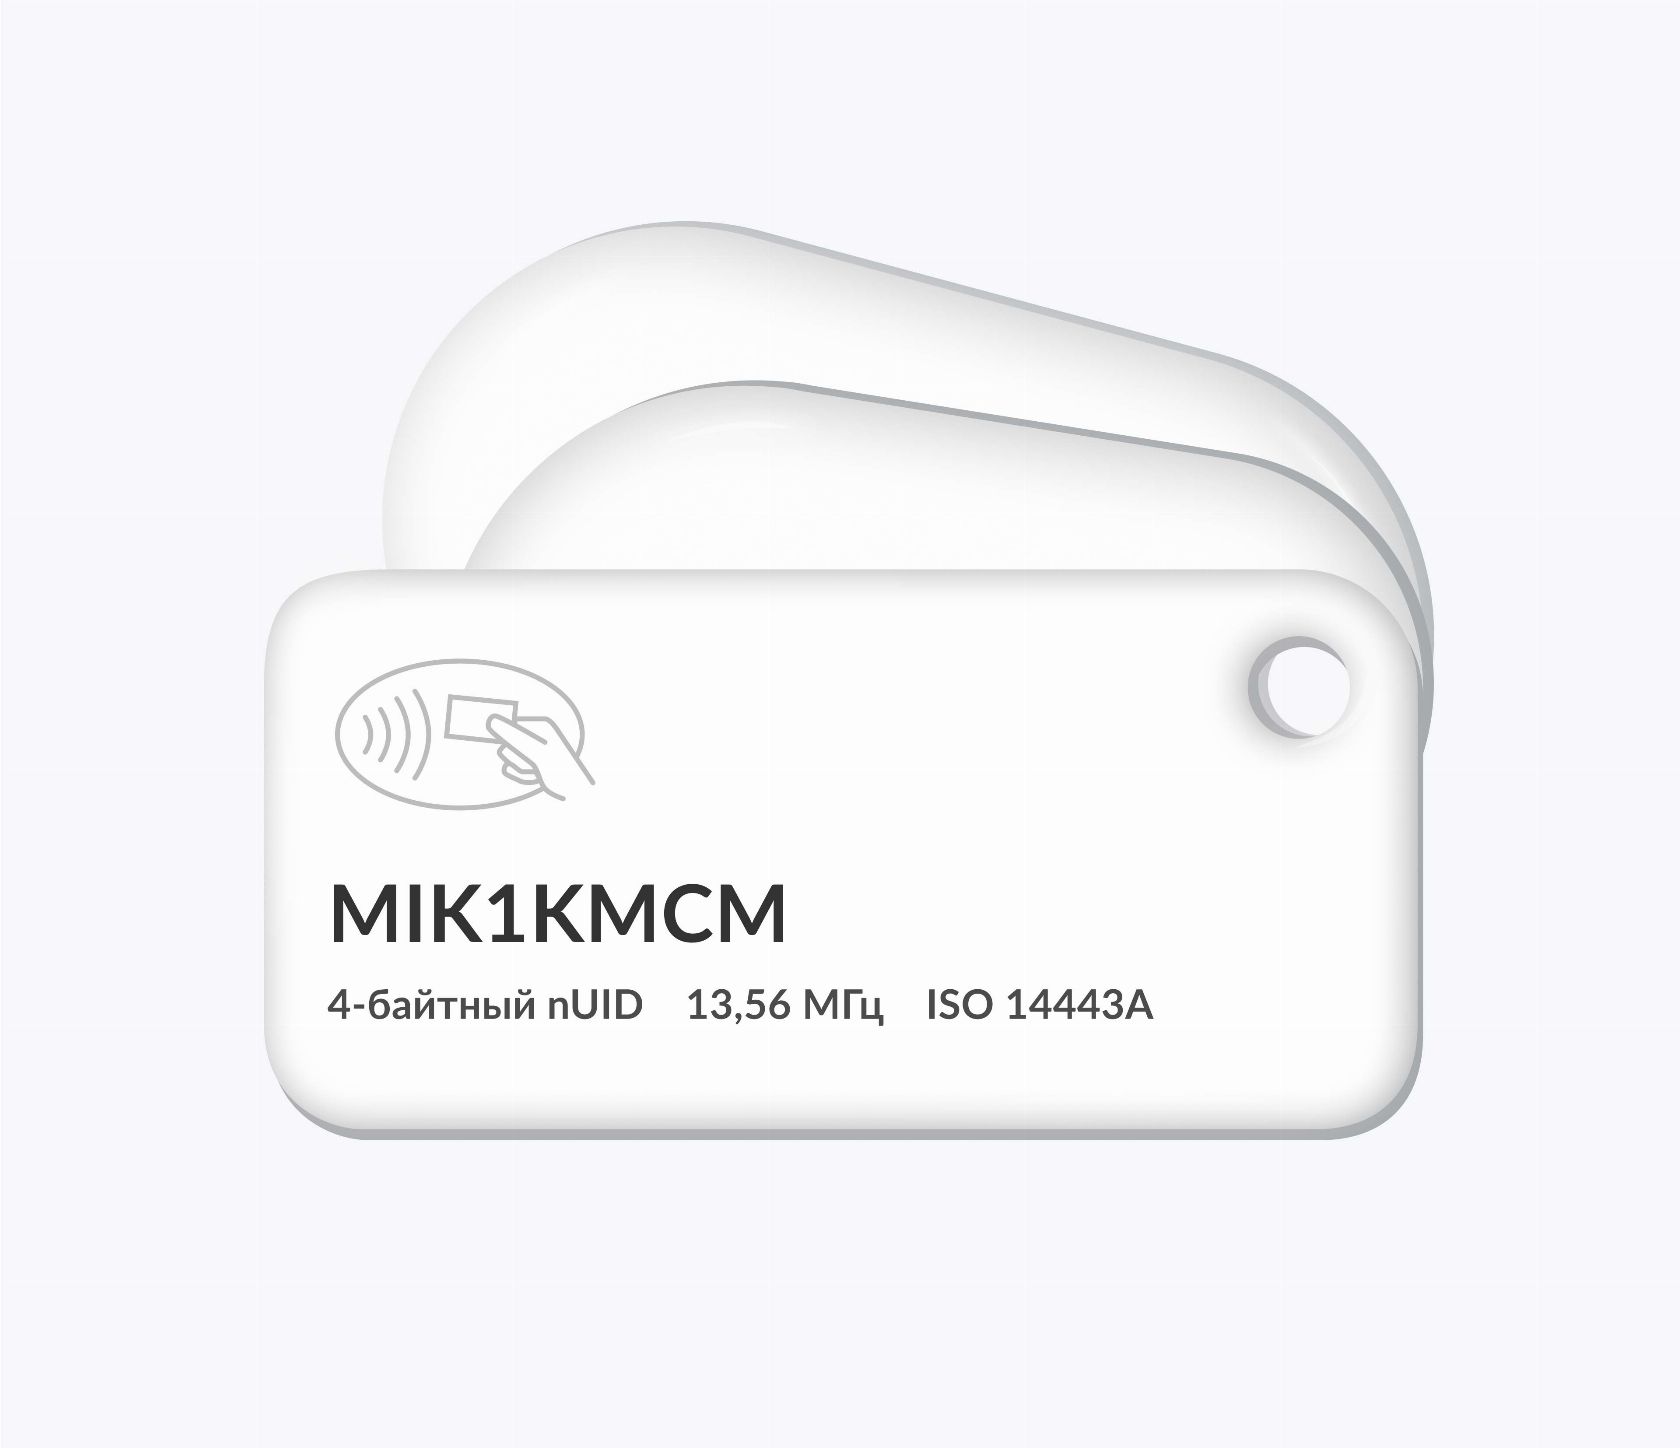 RFID-брелоки NEOKEY® с чипом MIK1KMCM 4 byte nUID и вашим логотипом RFID-брелоки NEOKEY® с чипом MIK1KMCM 4 byte nUID